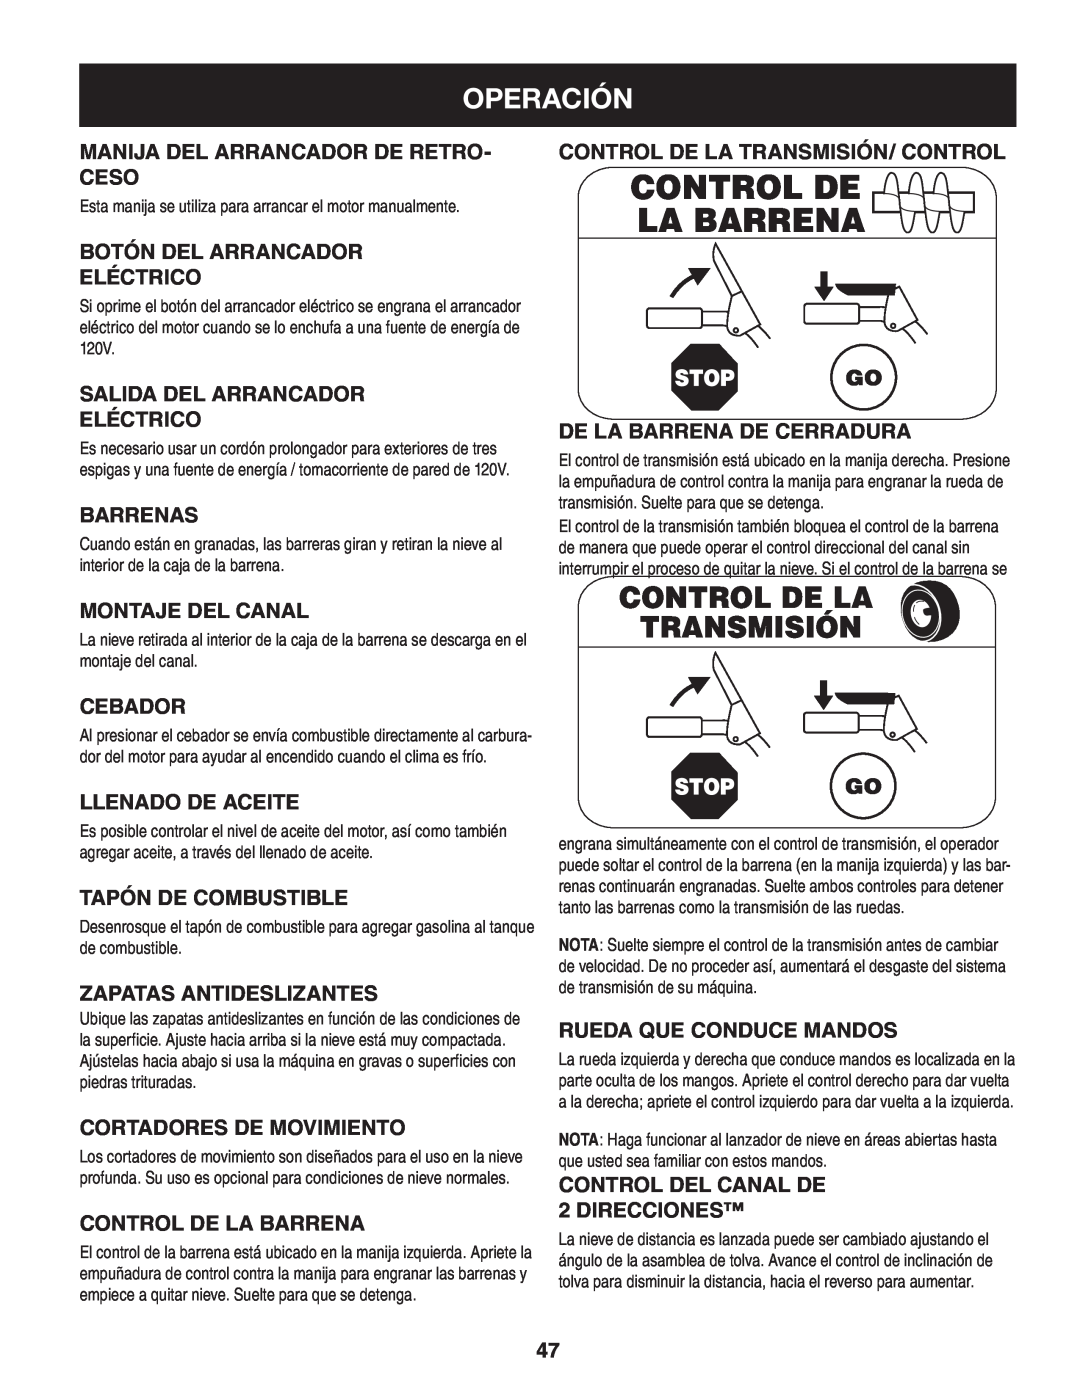 Craftsman 247.88845 manual Control De La Barrena, Control De La Transmisión, Operación 